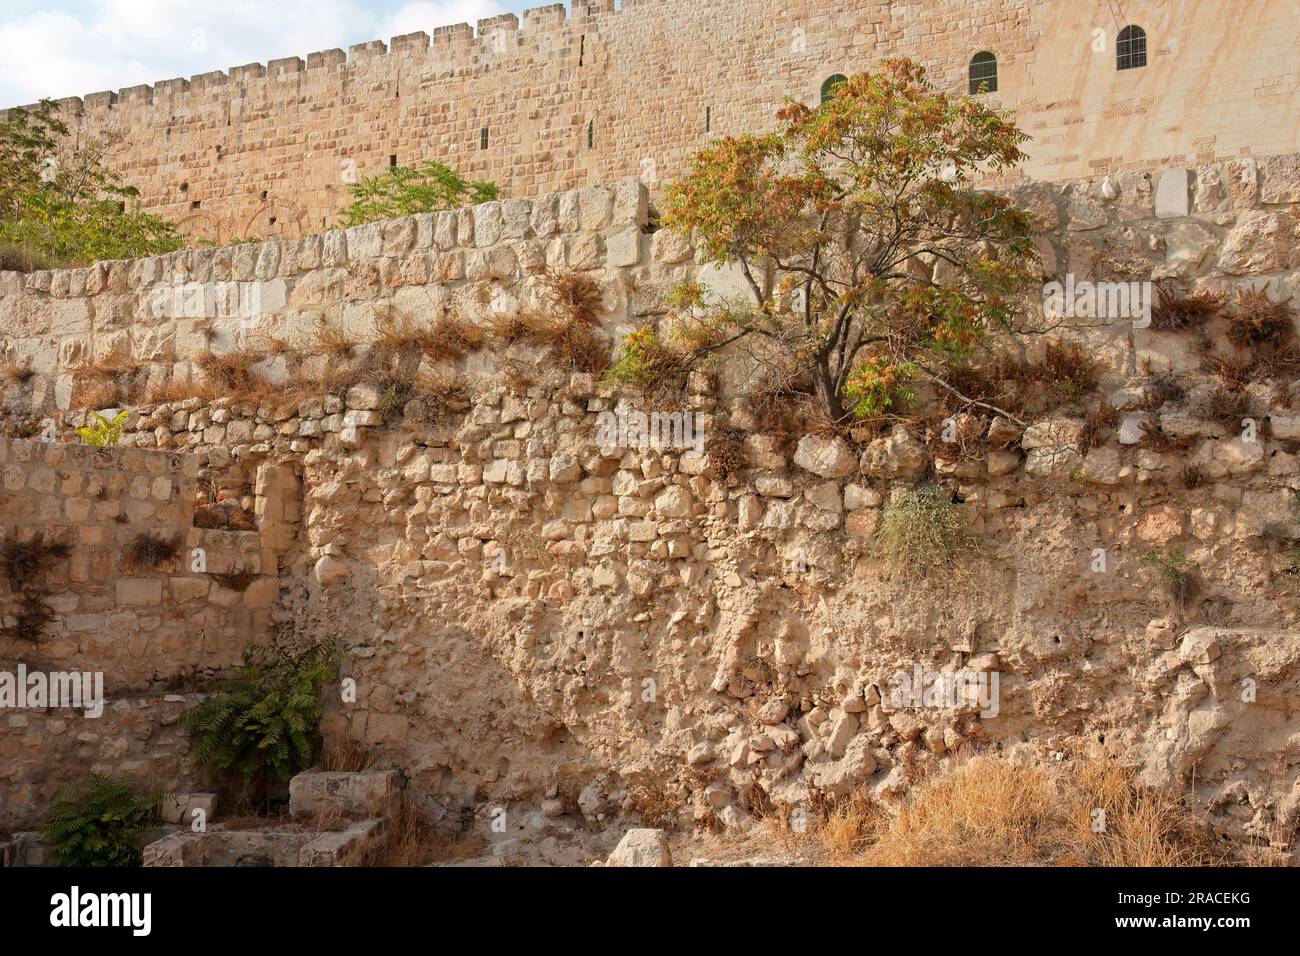 Dettaglio architettonico di una sezione dell'antico muro di Gerusalemme, Israele Foto Stock